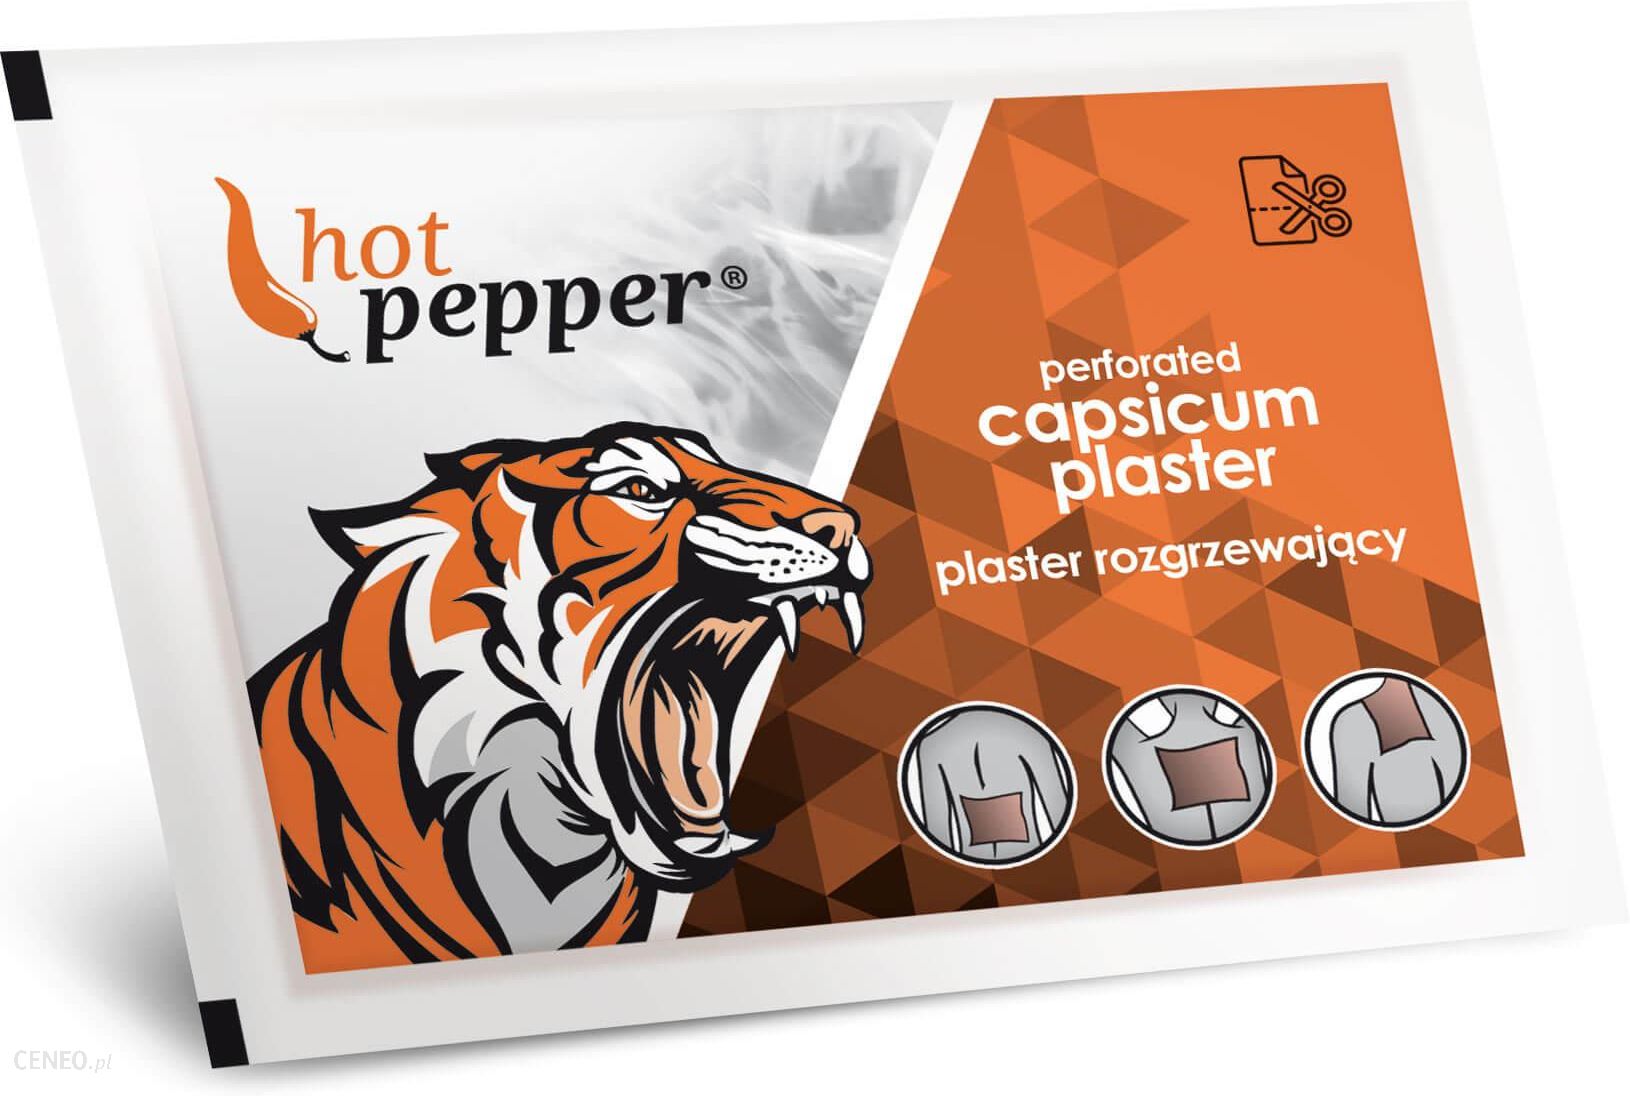 Hot Pepper plaster rozgrzewający 1 szt